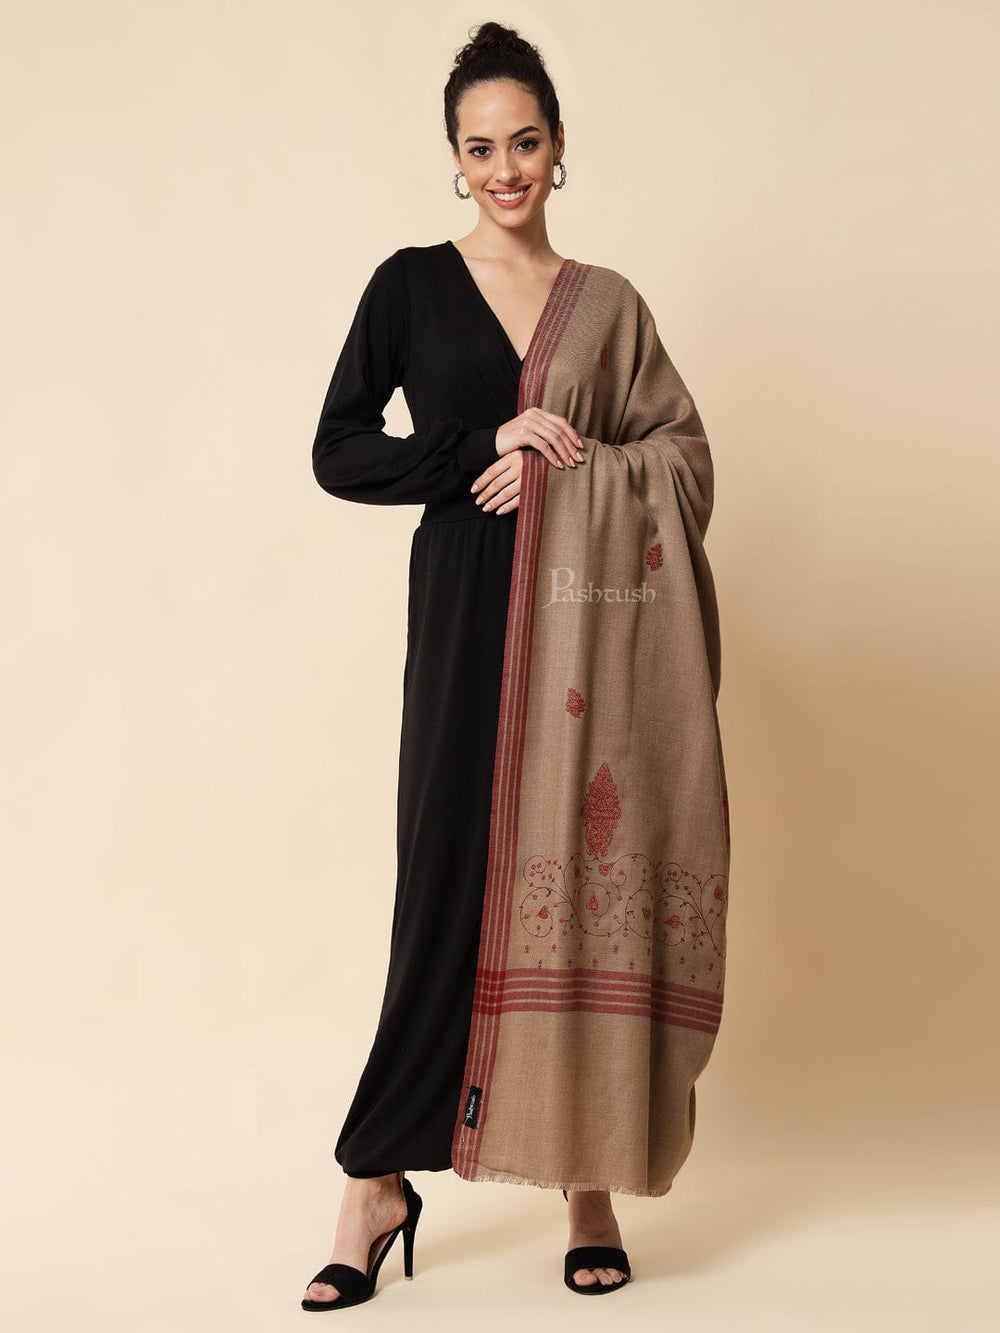 Pashtush India Womens Shawls Pashtush womens Woollen shawl, Embroidery design, Dark beige